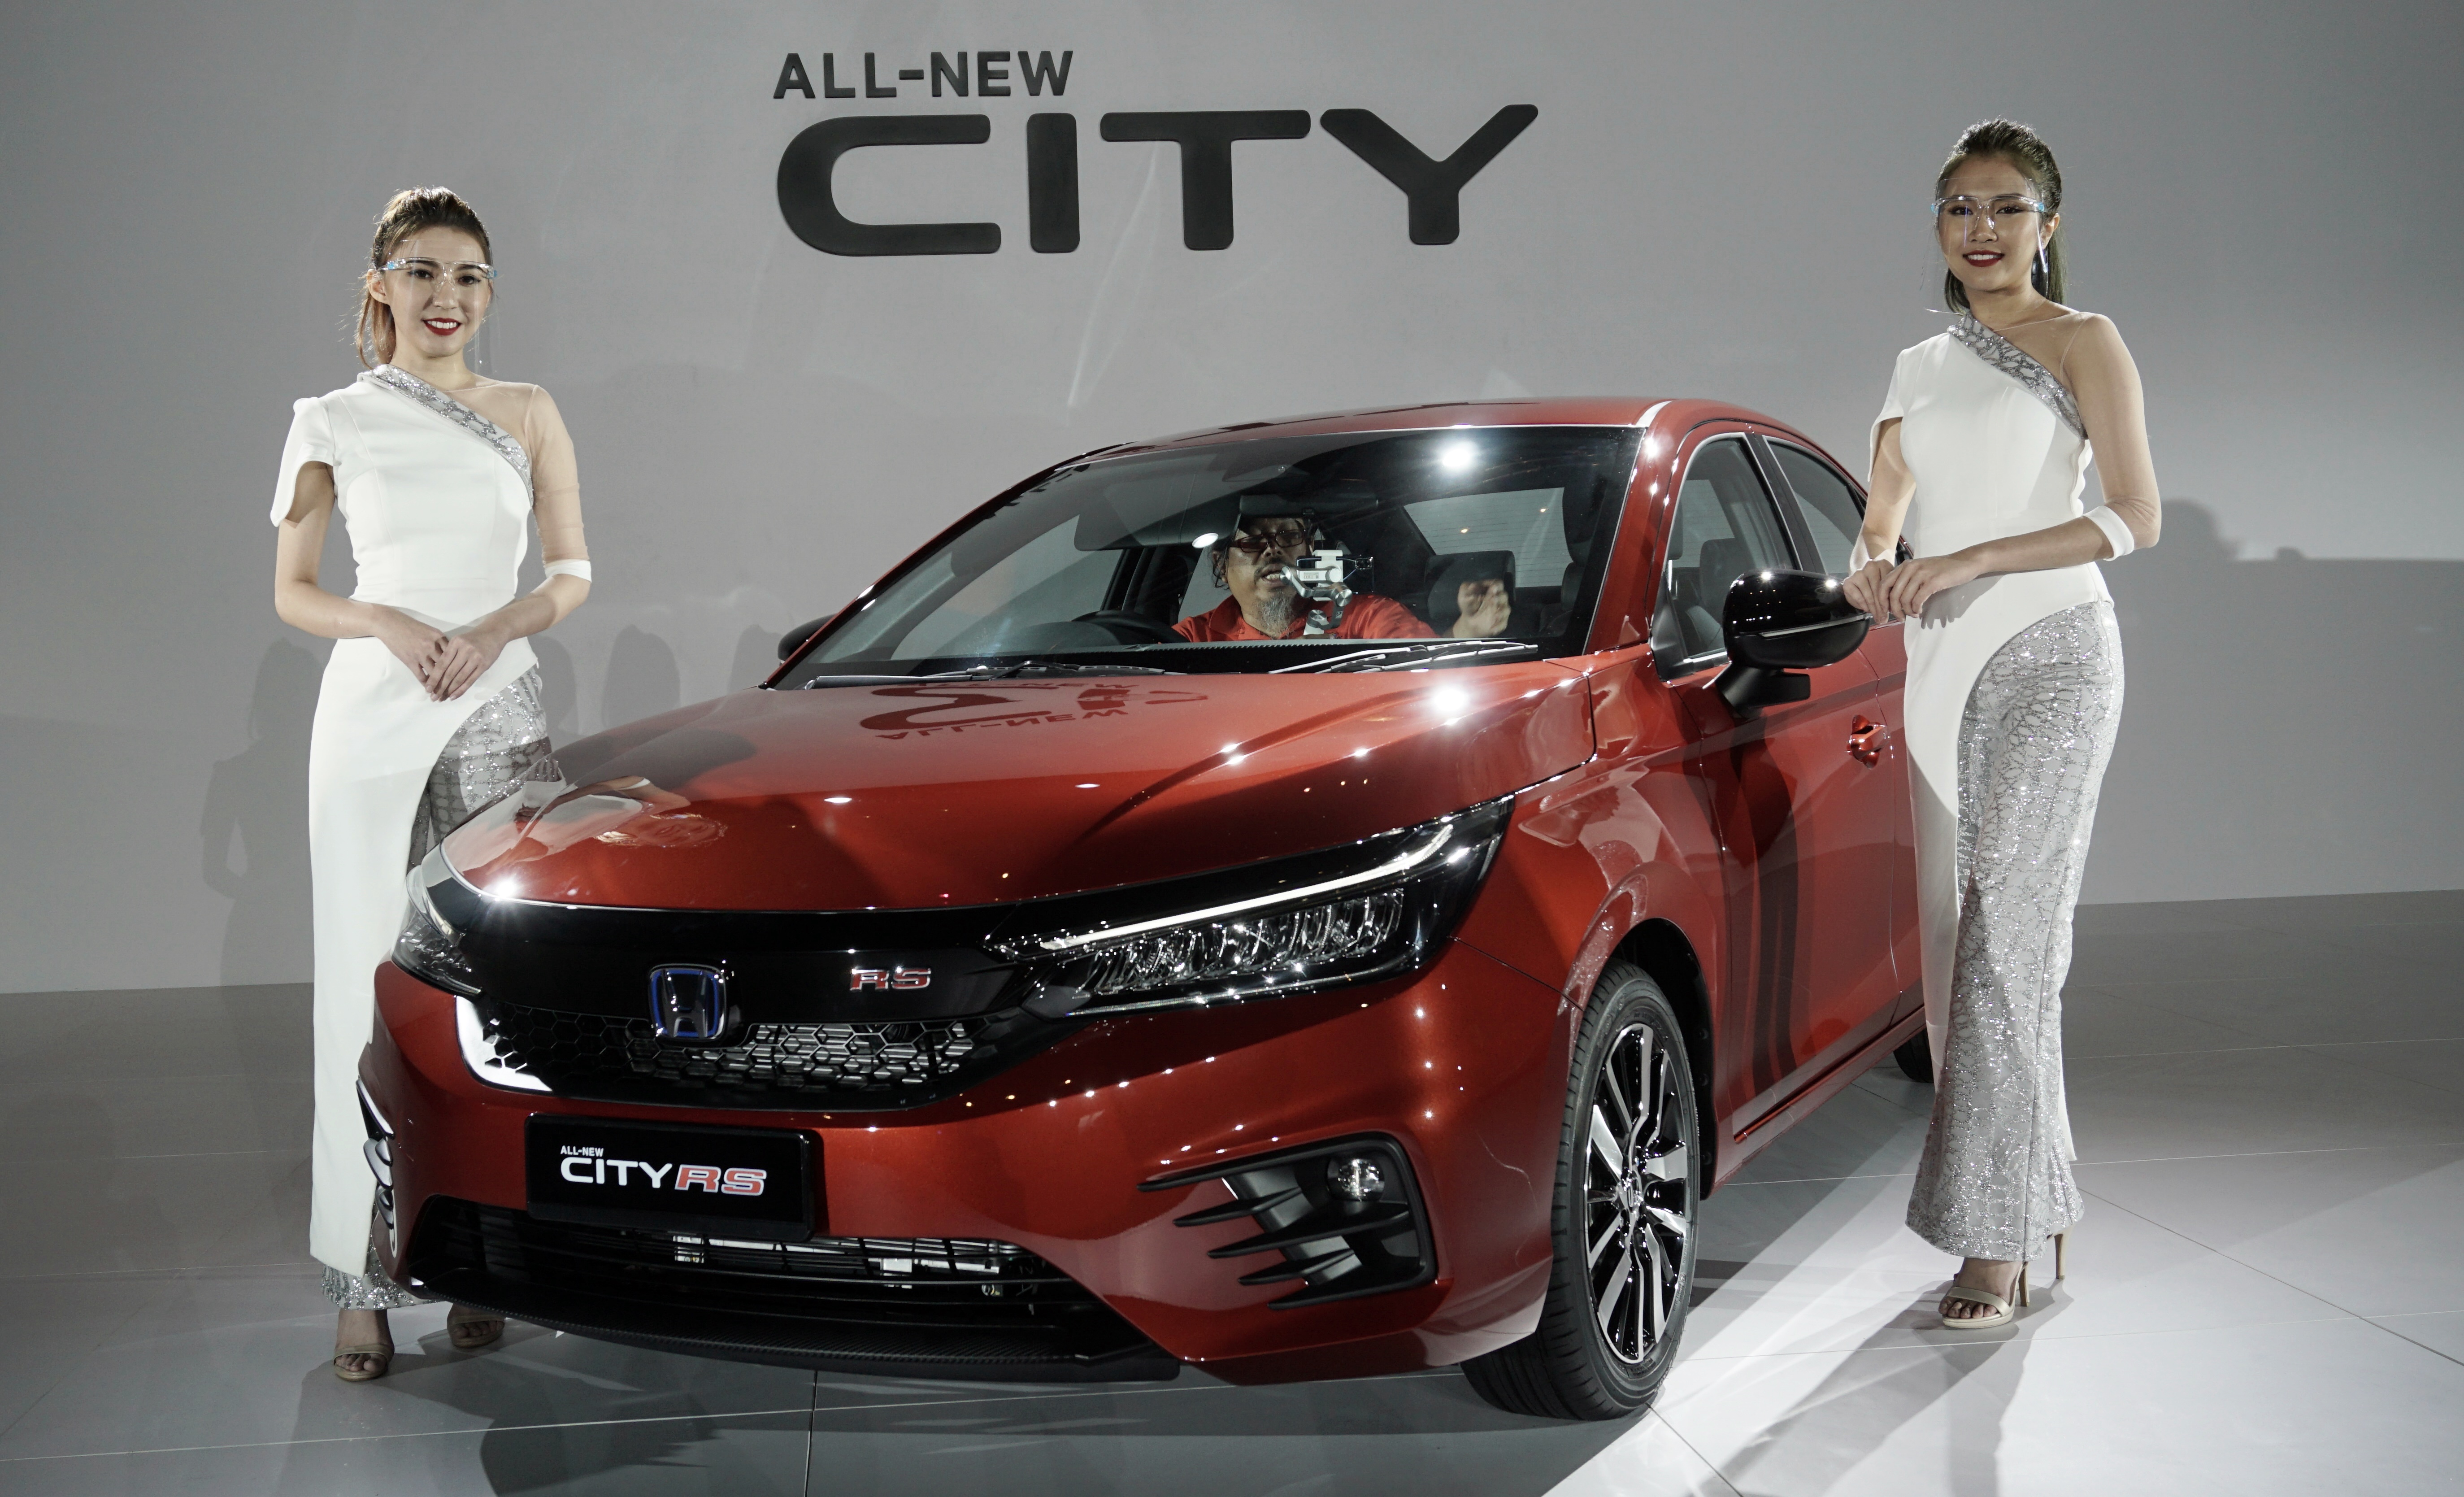 Honda city price malaysia 2020